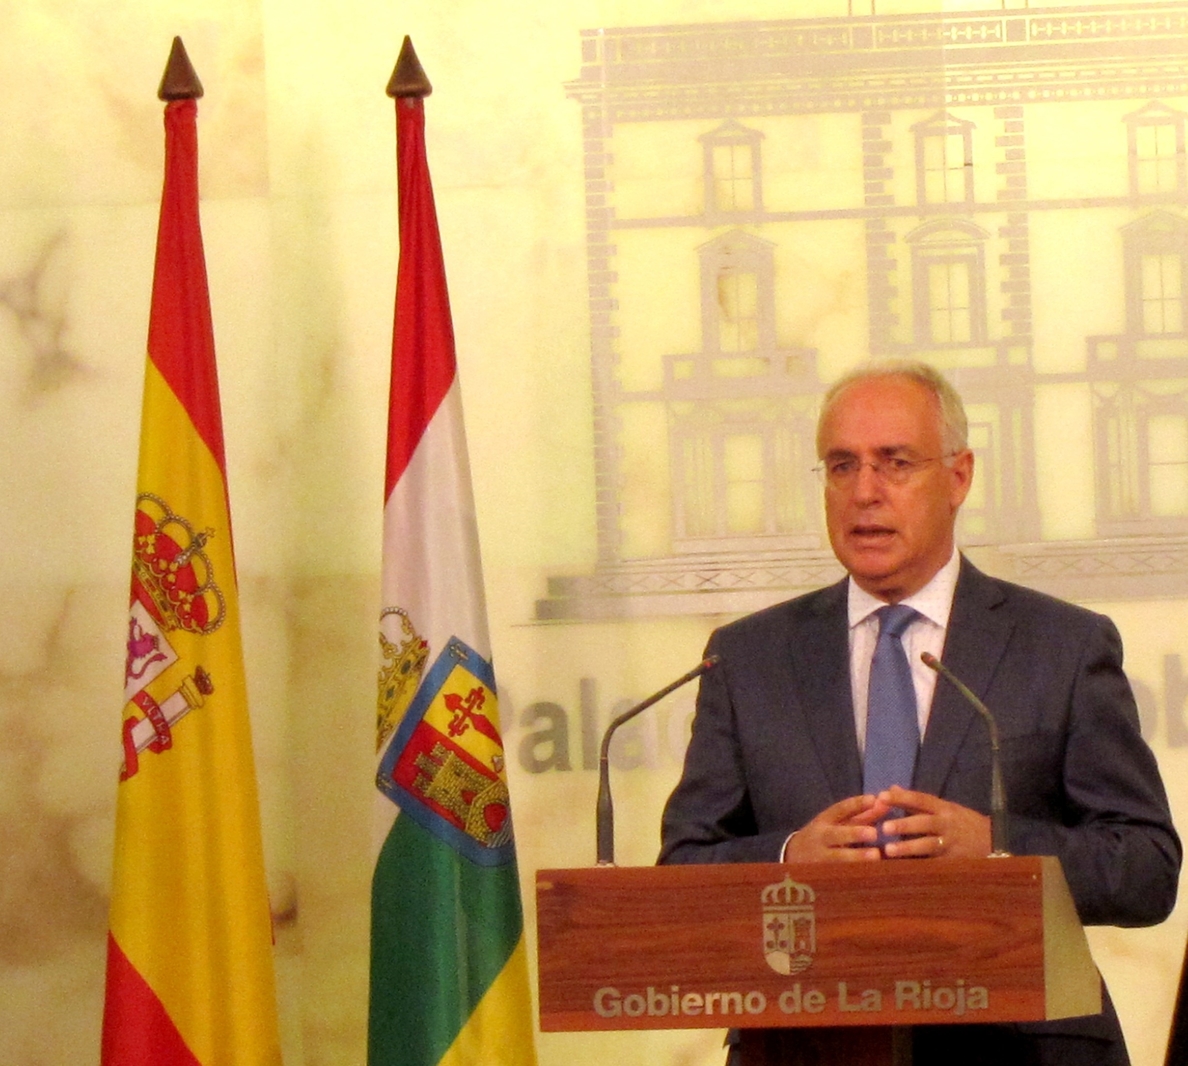 «El nuevo Gobierno de La Rioja tendrá…»